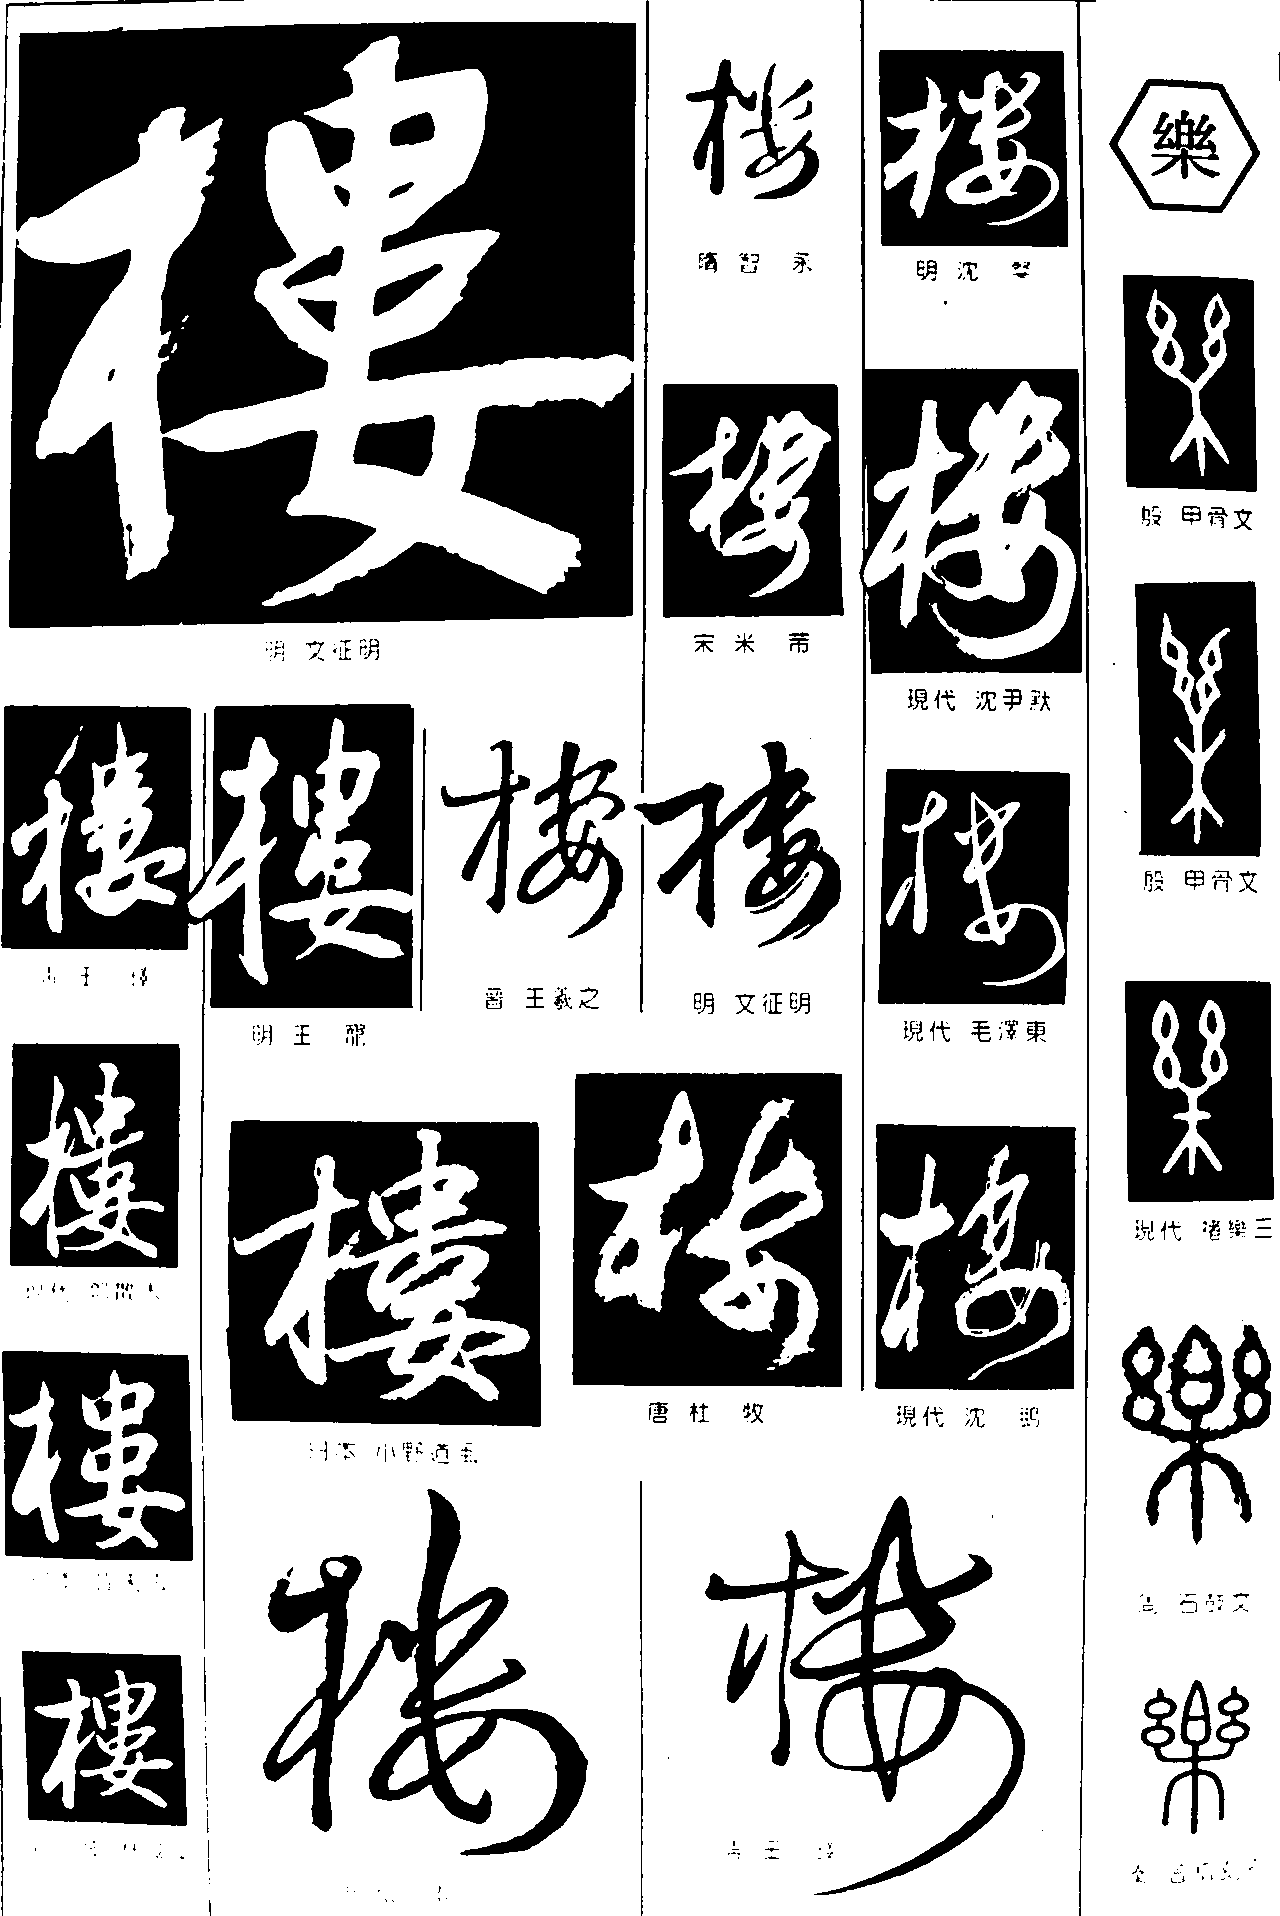 超赵_书法字体_艺术字体设计